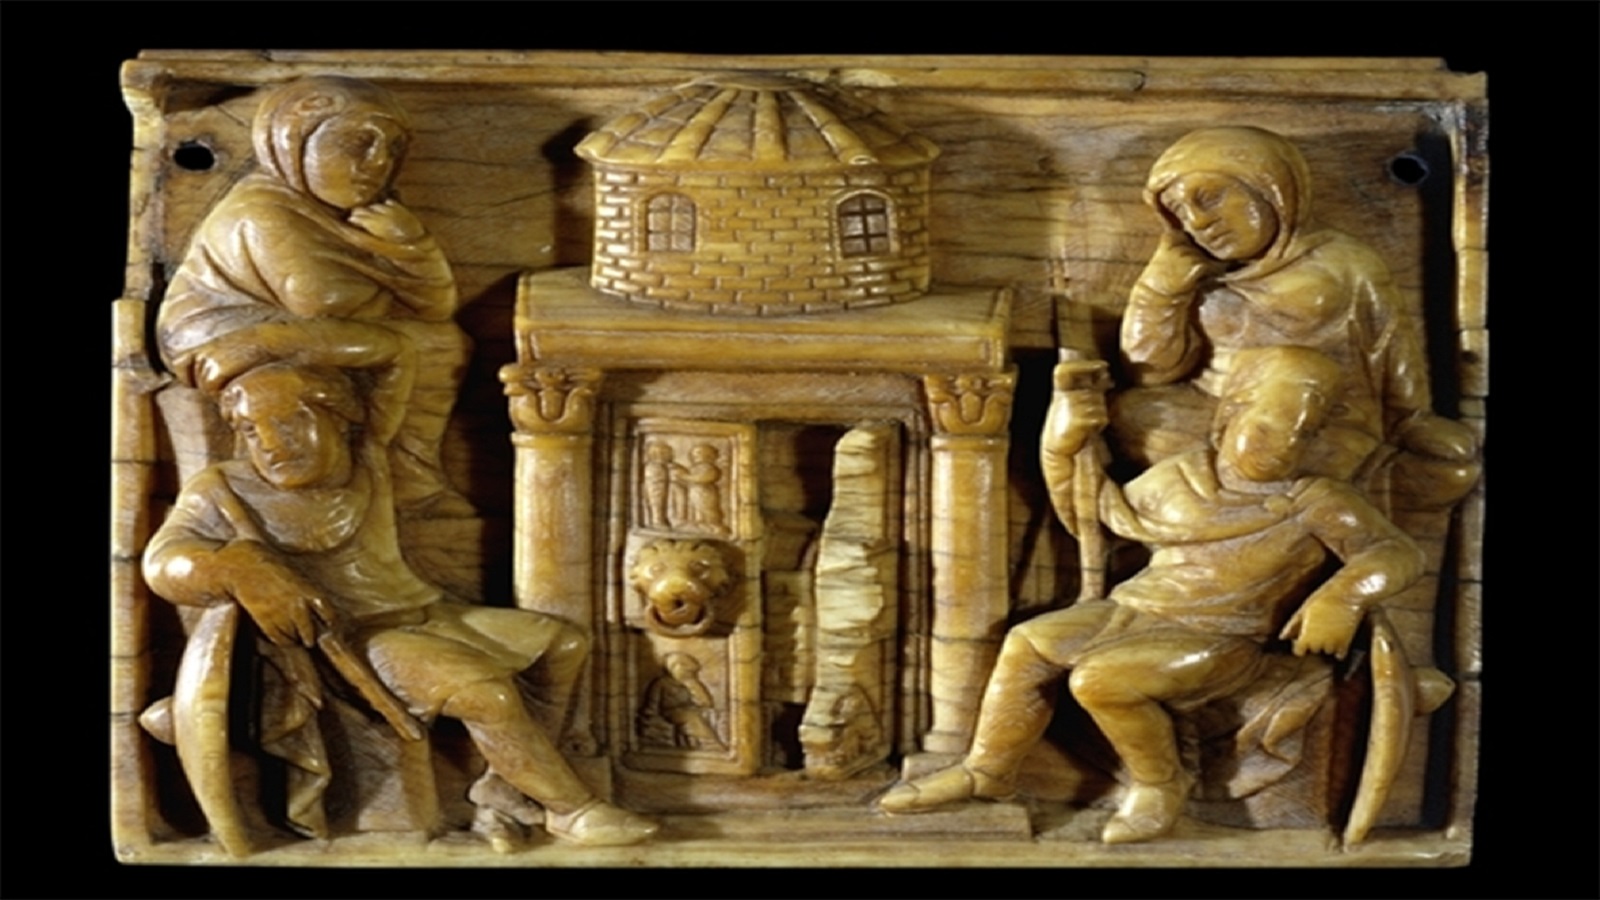 القيامة على أحد جوانب علبة عاجية من القرن الخامس، المتحف البريطاني، لندن.